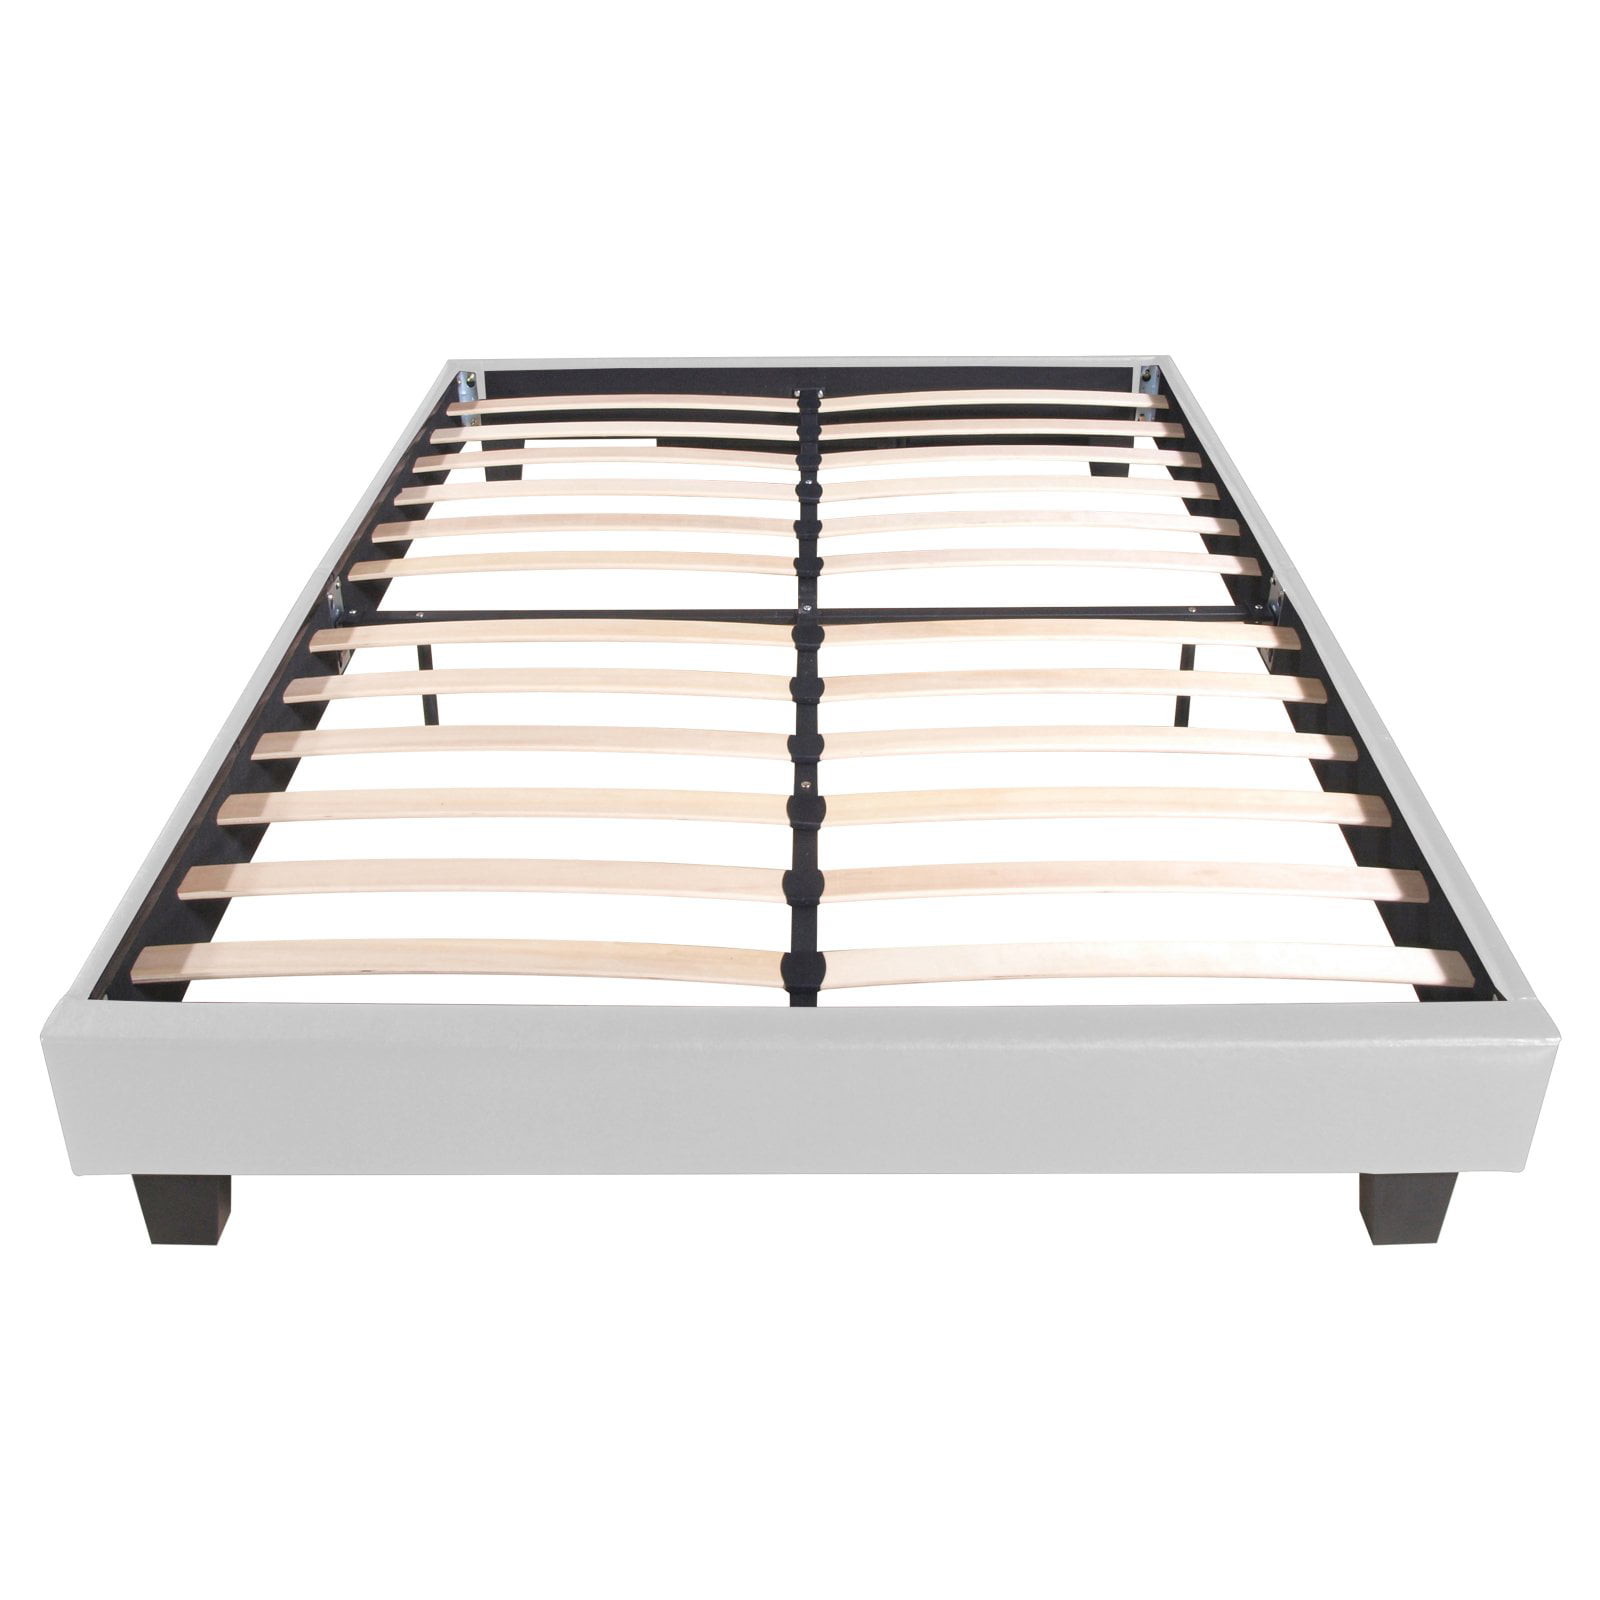 12 Inch Solid Wood Frame Platform Bed, Murray Twin Platform Bed